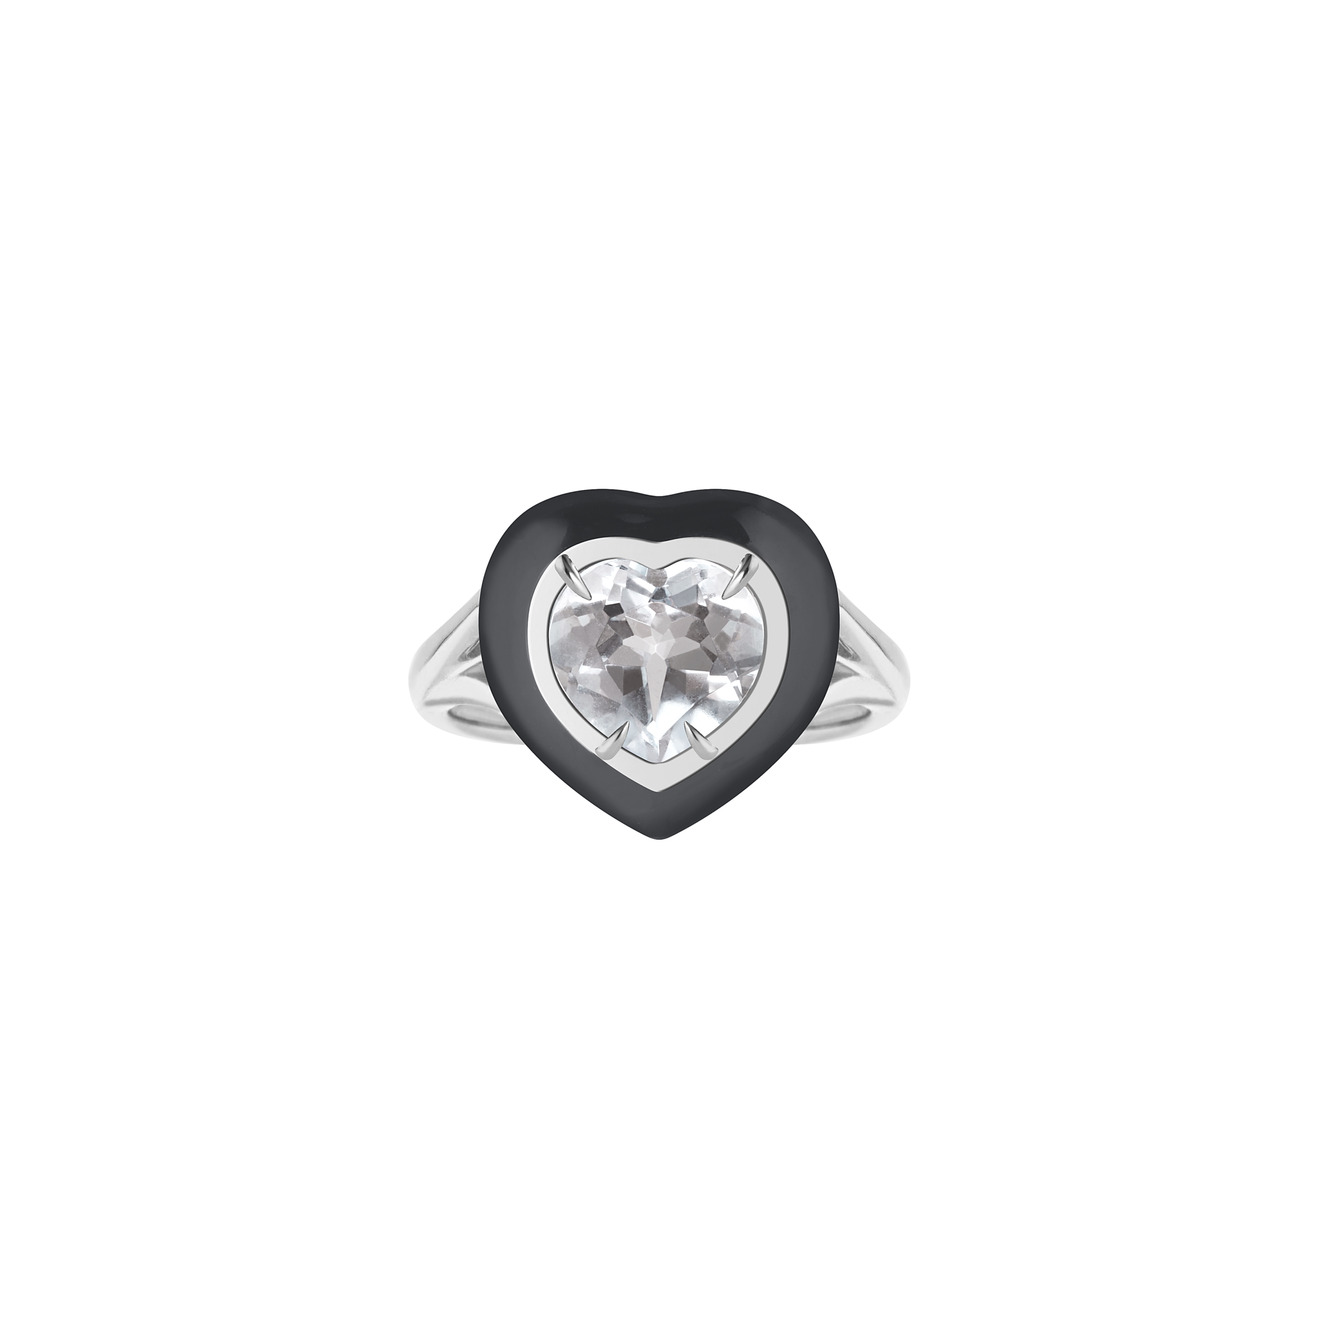 Moonka Кольцо из серебра с горным хрусталем и черной эмалью серьги серебряные moonka малые с горным хрусталем 2 шт